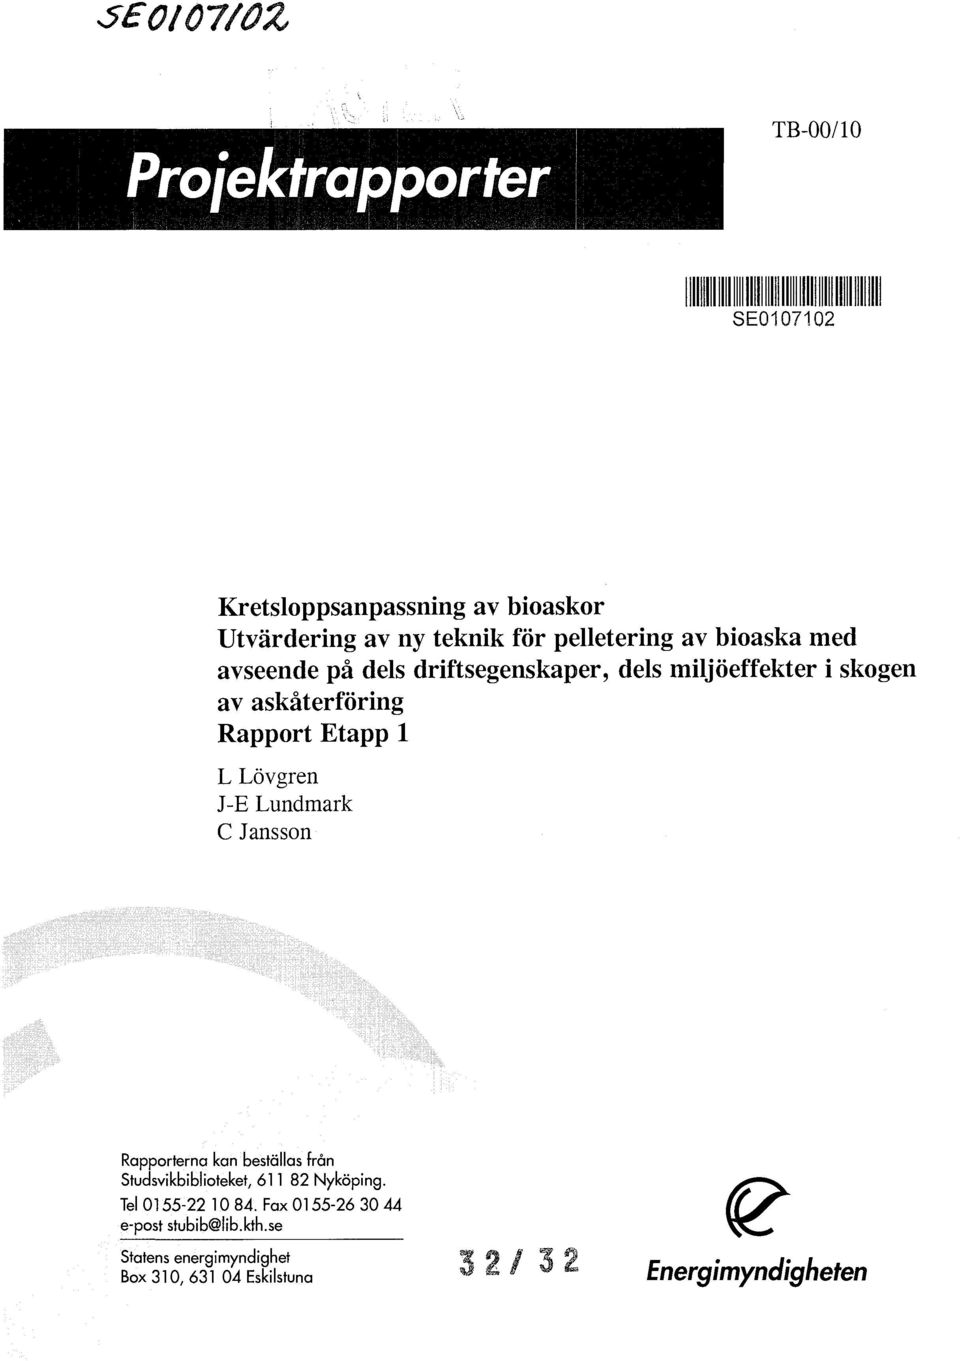 Etapp 1 L Lövgren J-E Lundmark C Jansson Rapporterna kan beställas från Studsvikbiblioteket, 611 82 Nyköping.